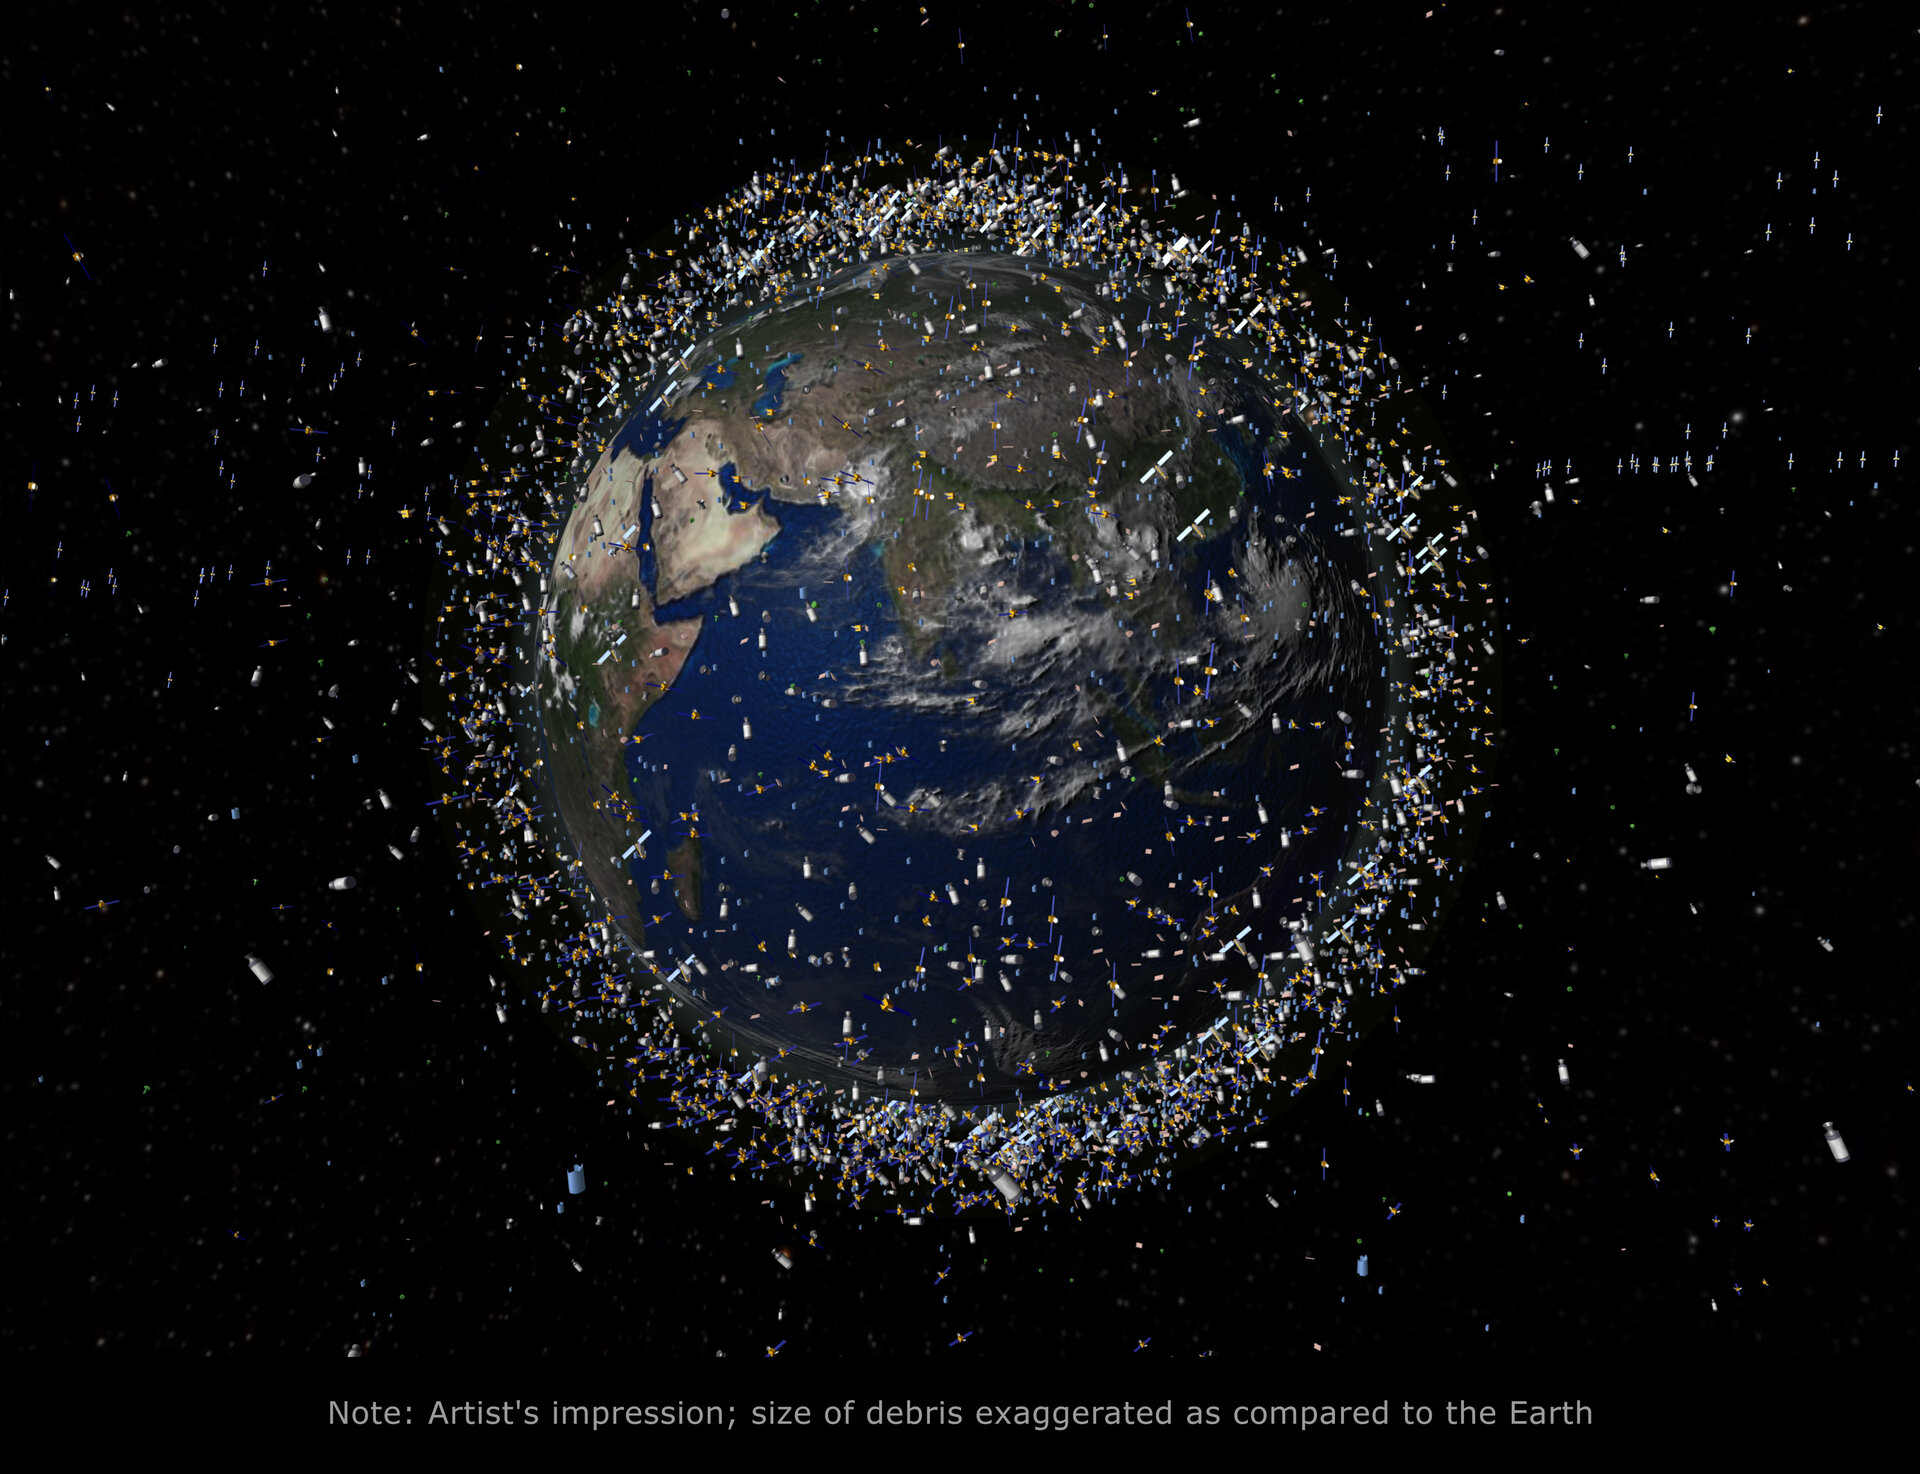 Debris objects in low-Earth orbit (LEO)